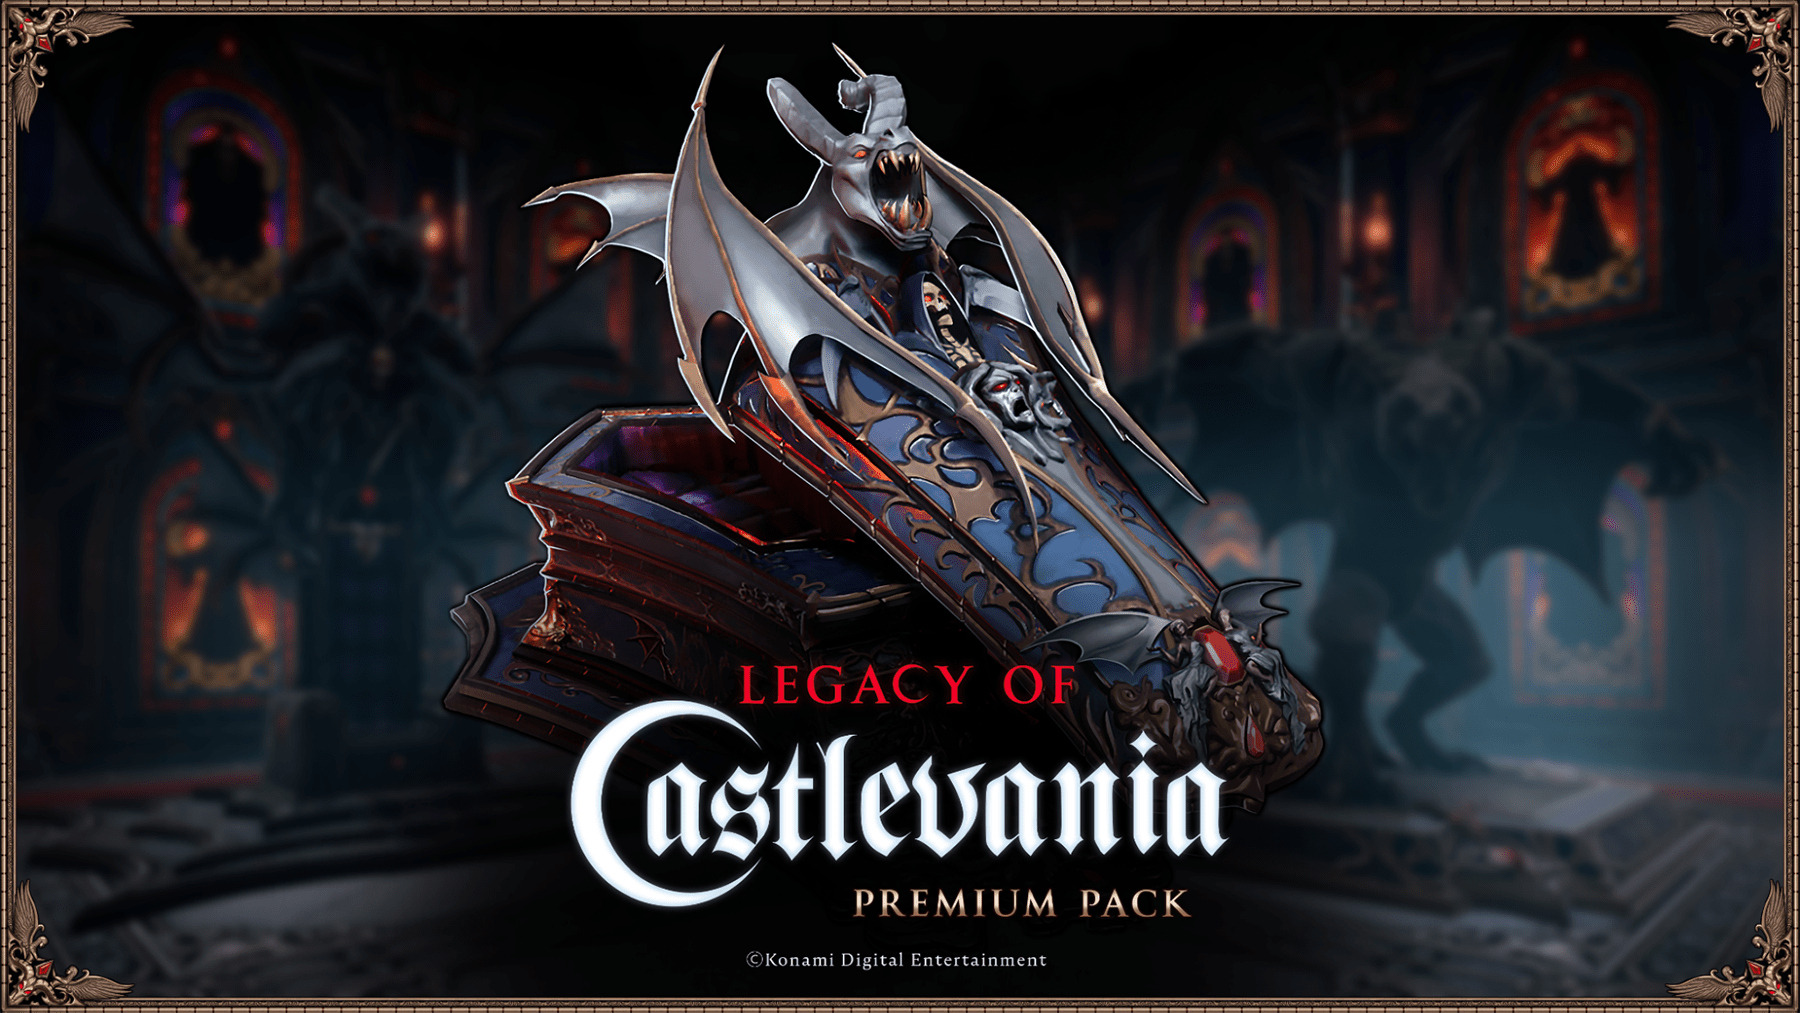 Le lancement de la collaboration V Rising - Legacy of Castlevania aura lieu le 8 mai.